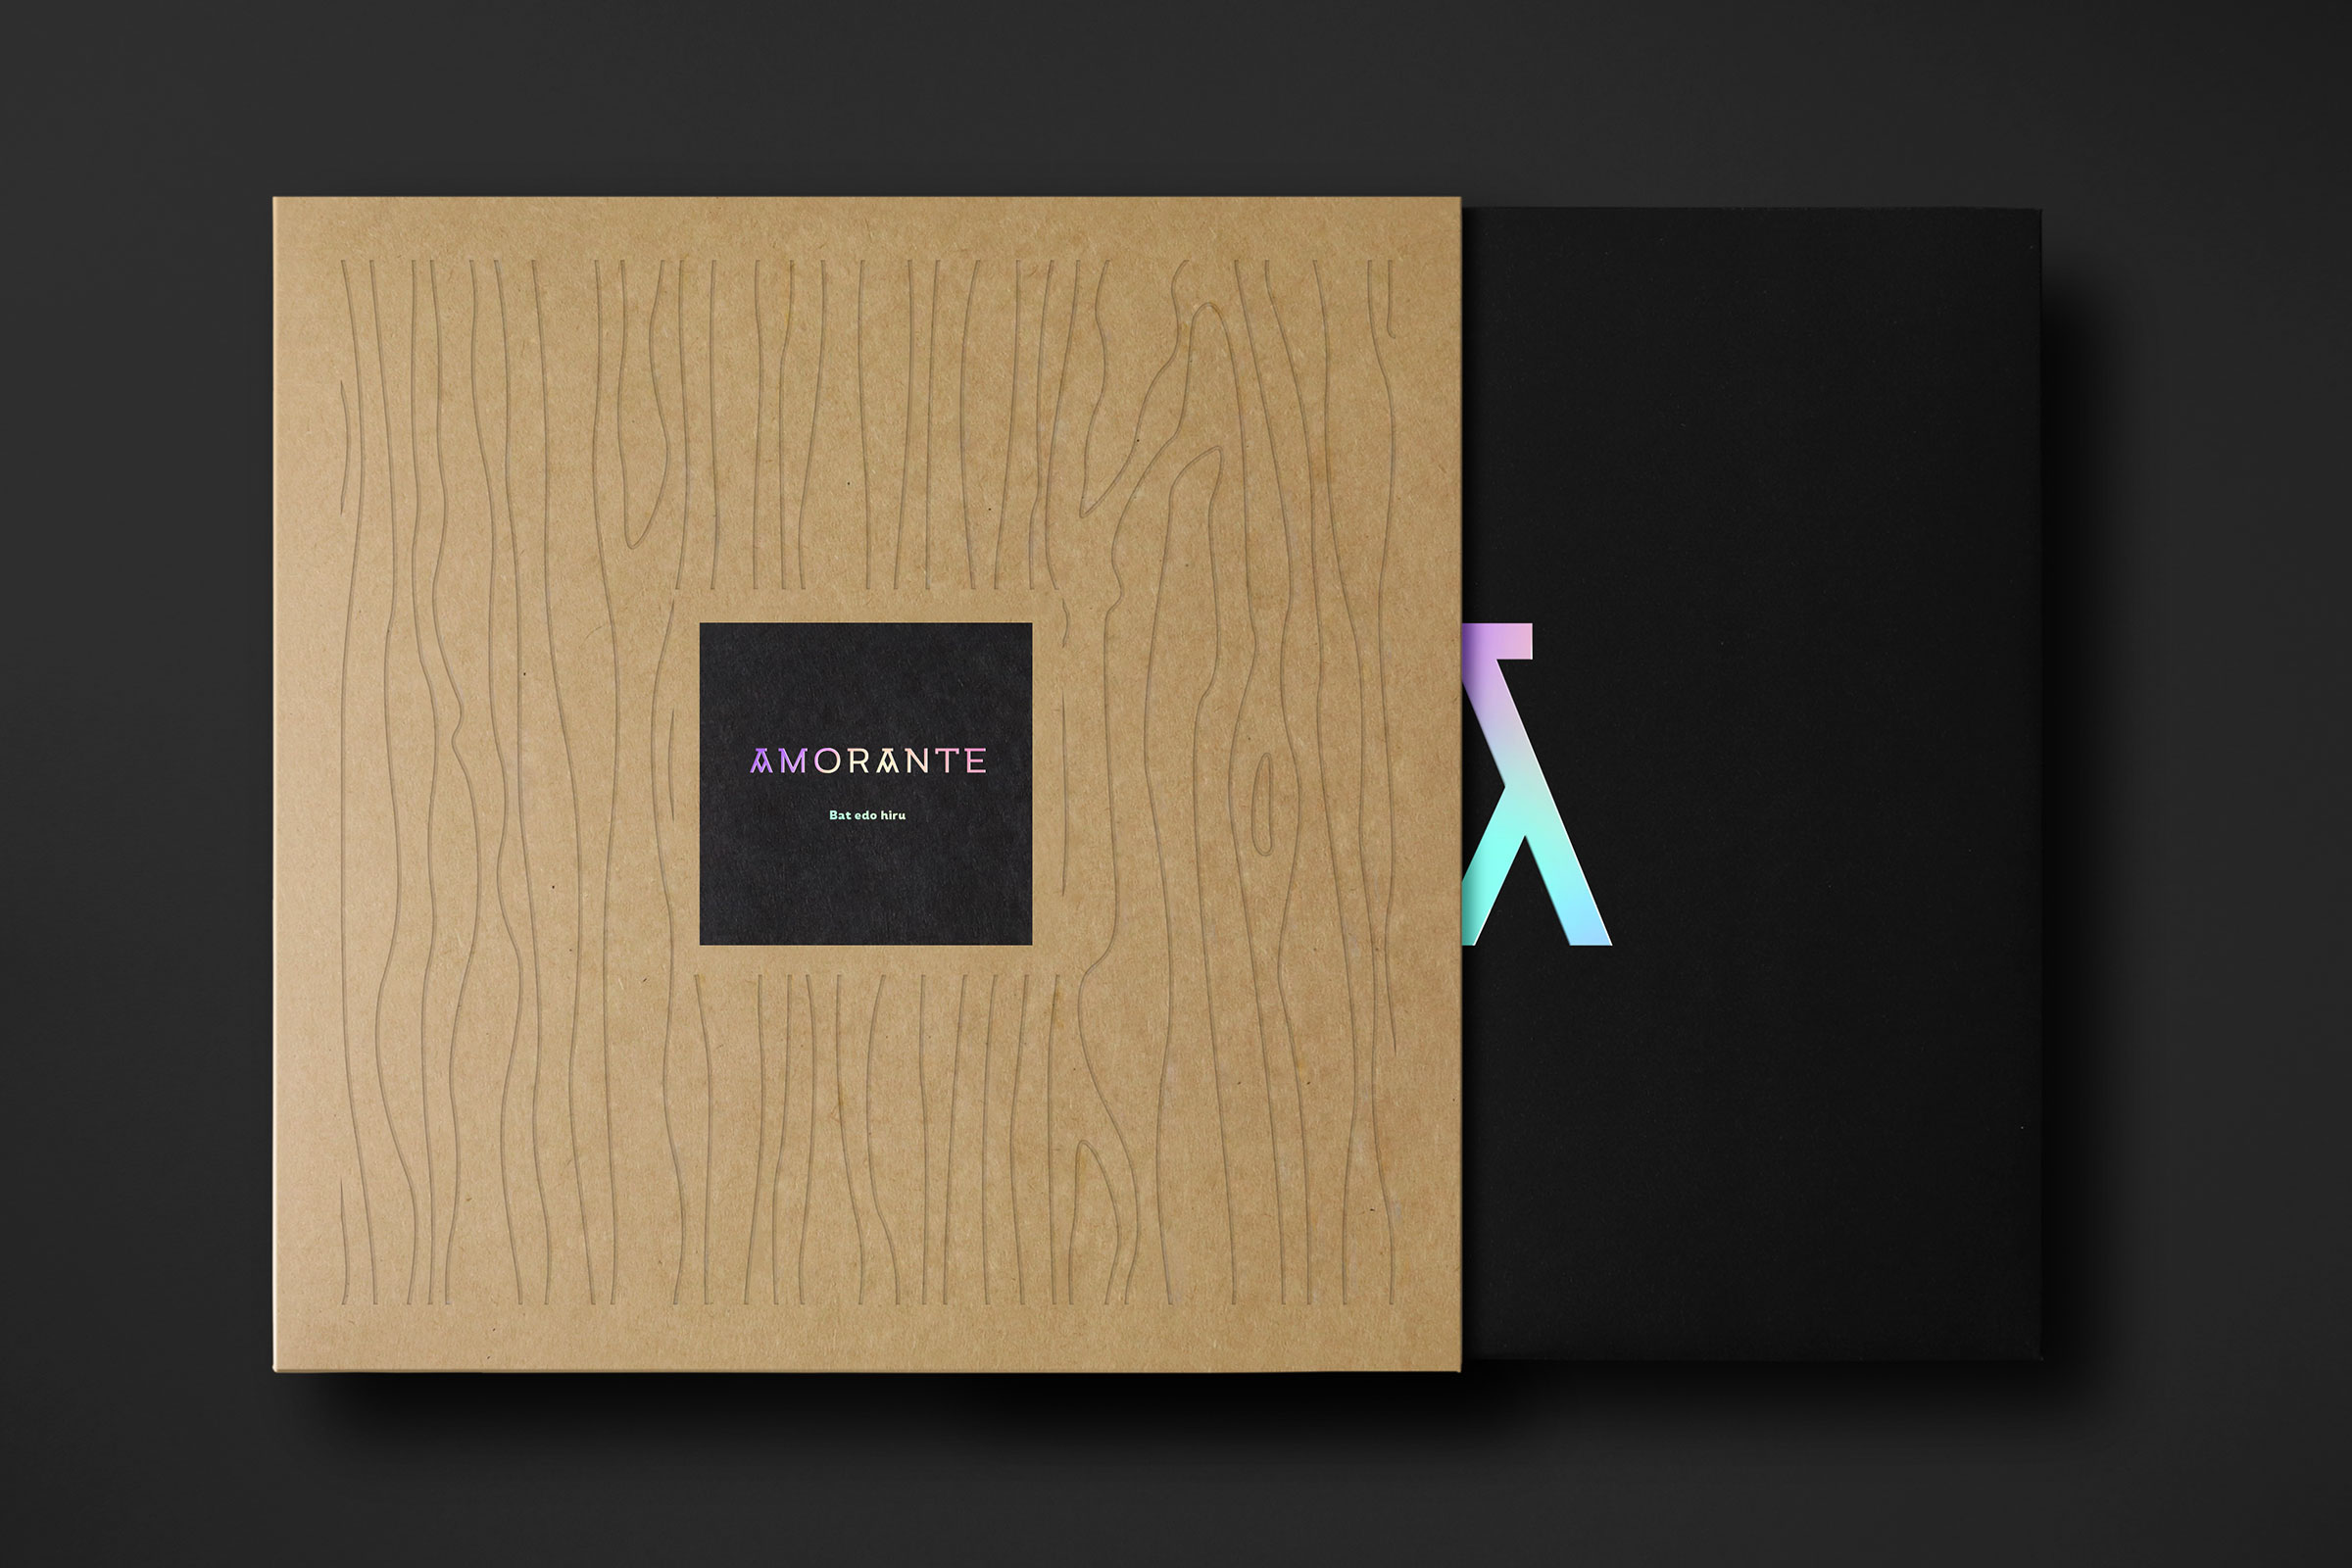 Diseño del packaging para el disco Bat edo hiru de Amorante